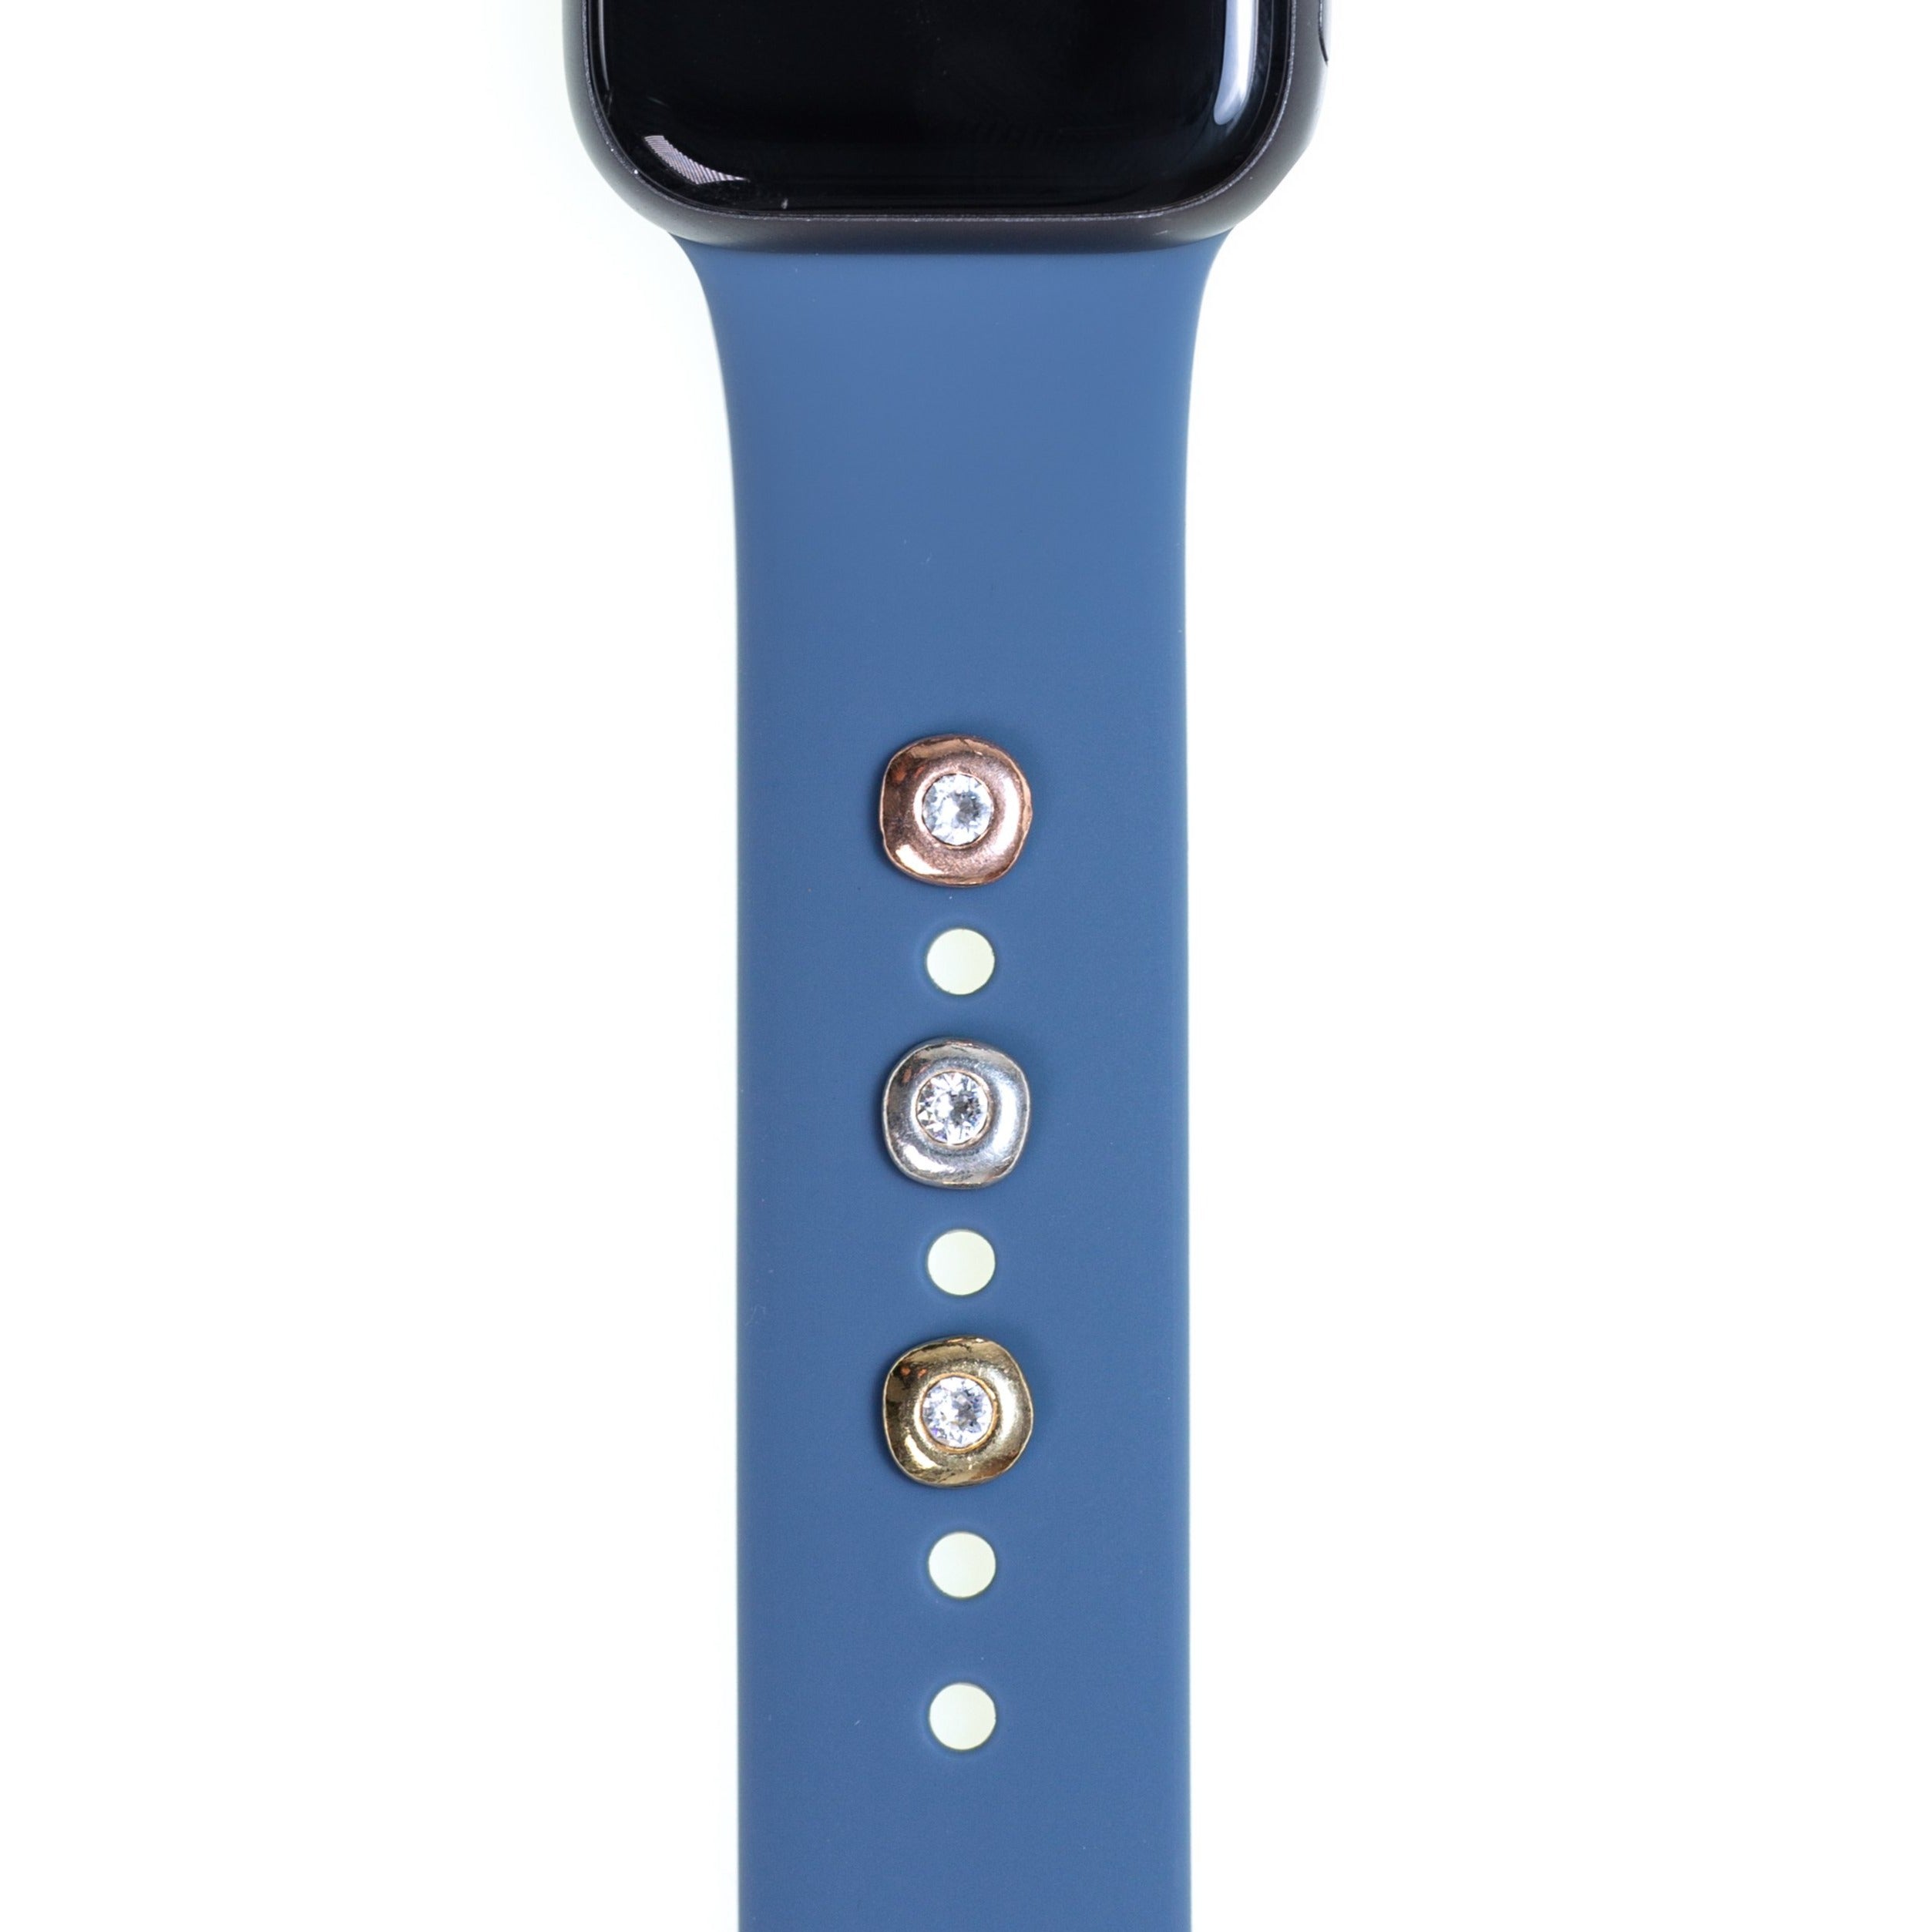 BirthStone Cuff • Apple Watch Band's Charm